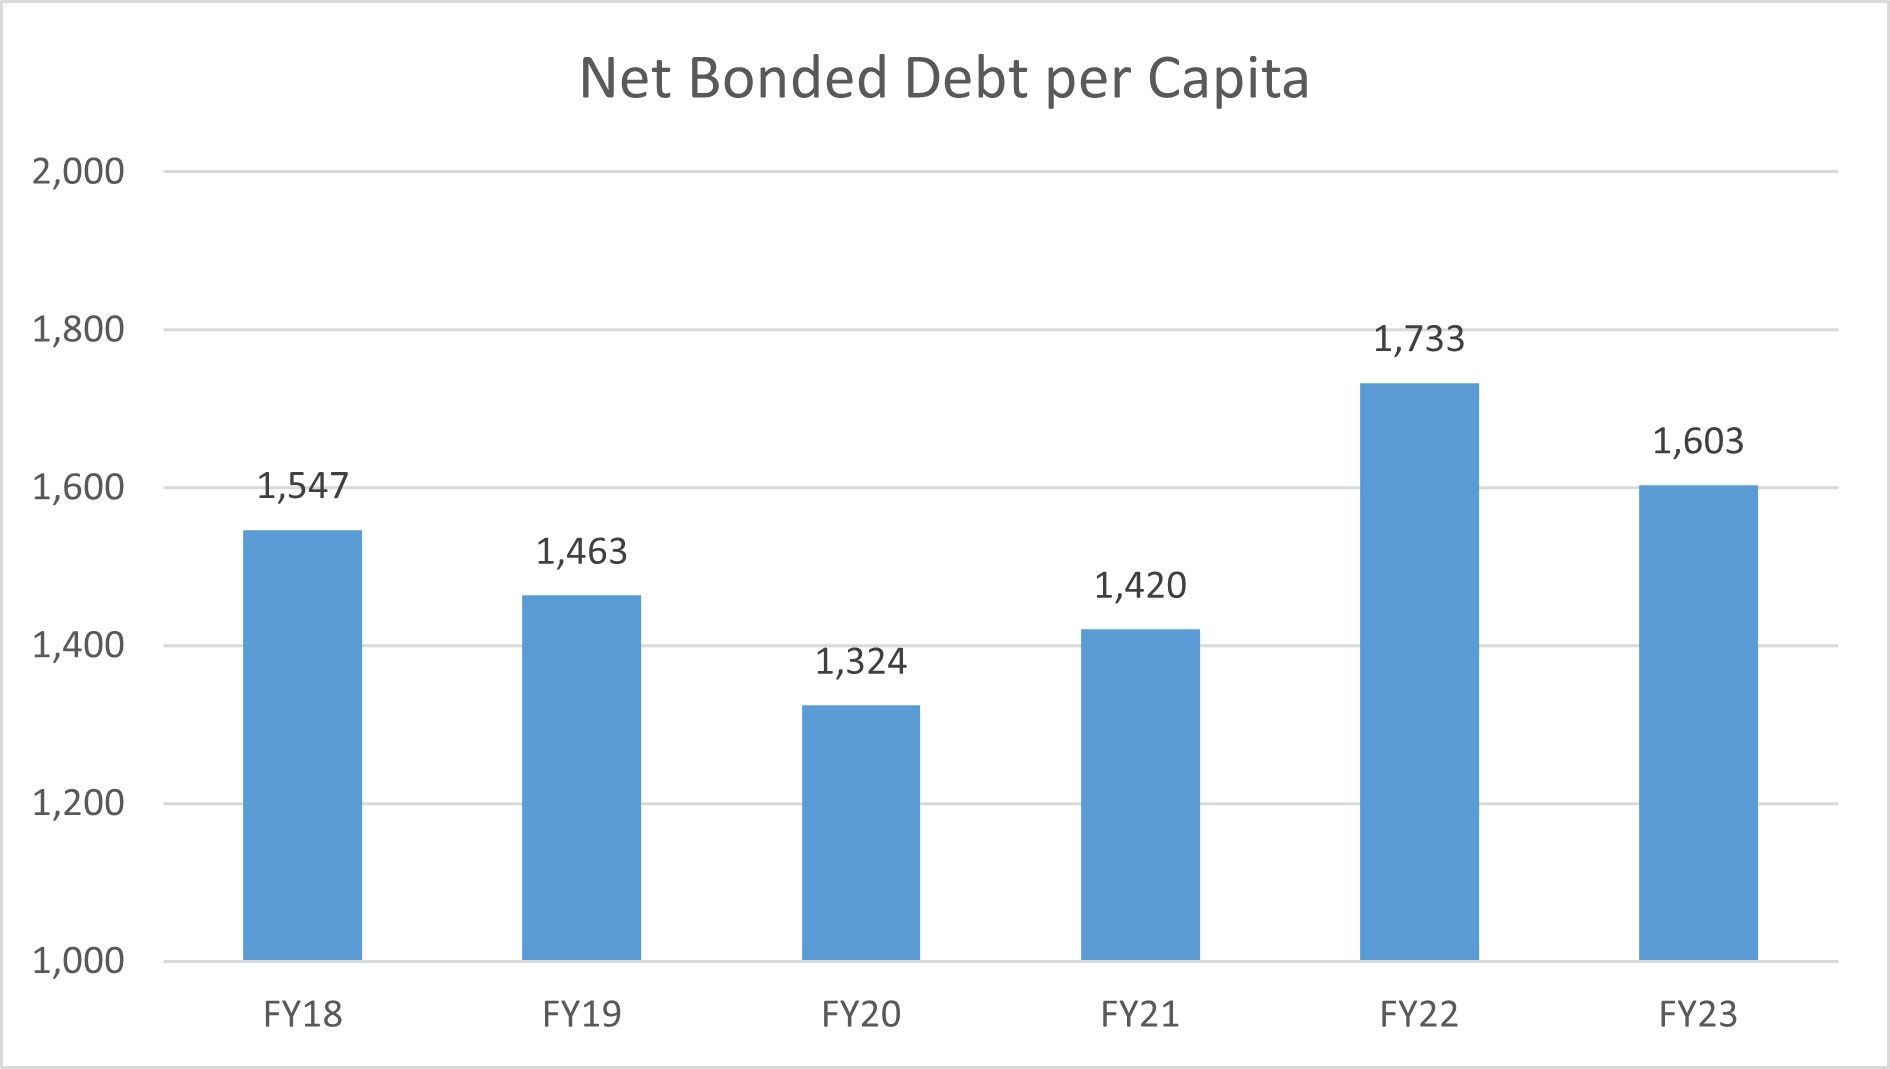 NB Debt per Capita